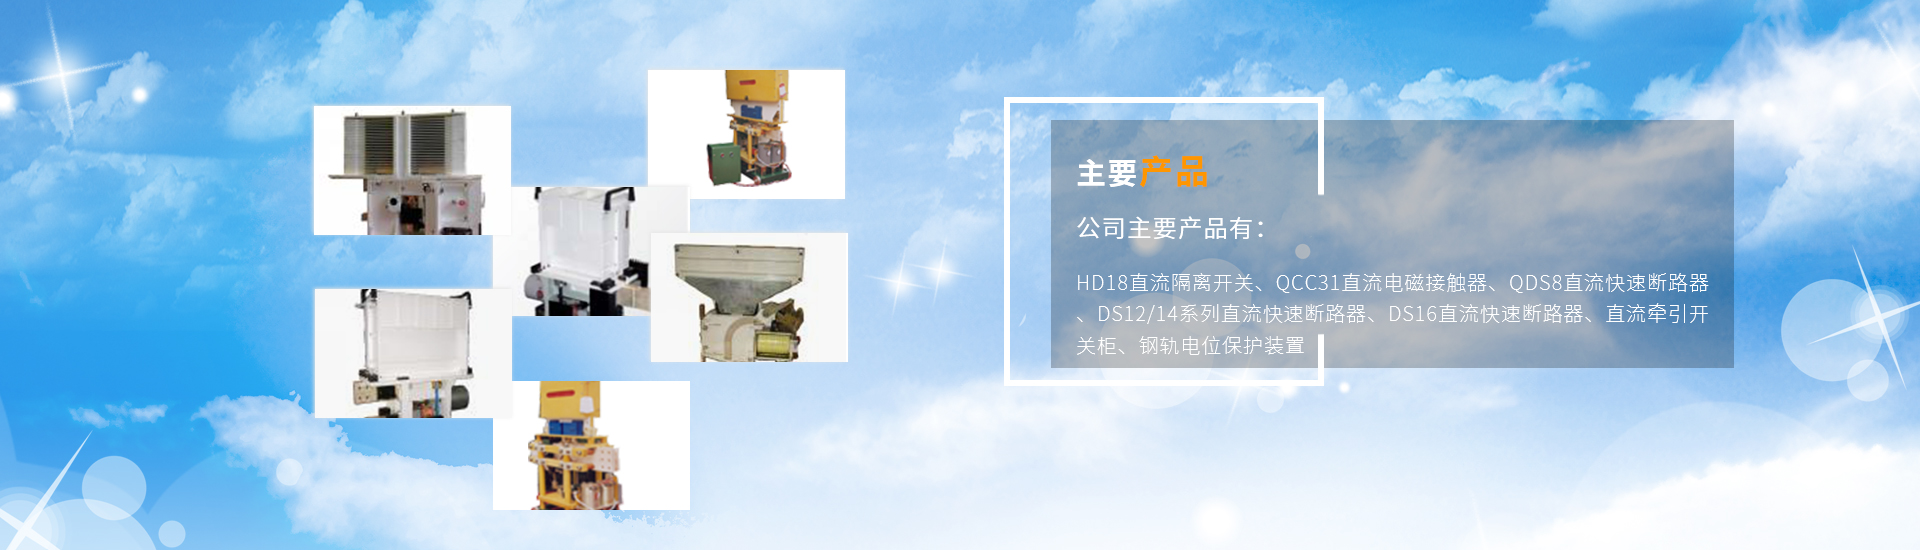 关于当前产品6966集团直营·(中国)官方网站的成功案例等相关图片